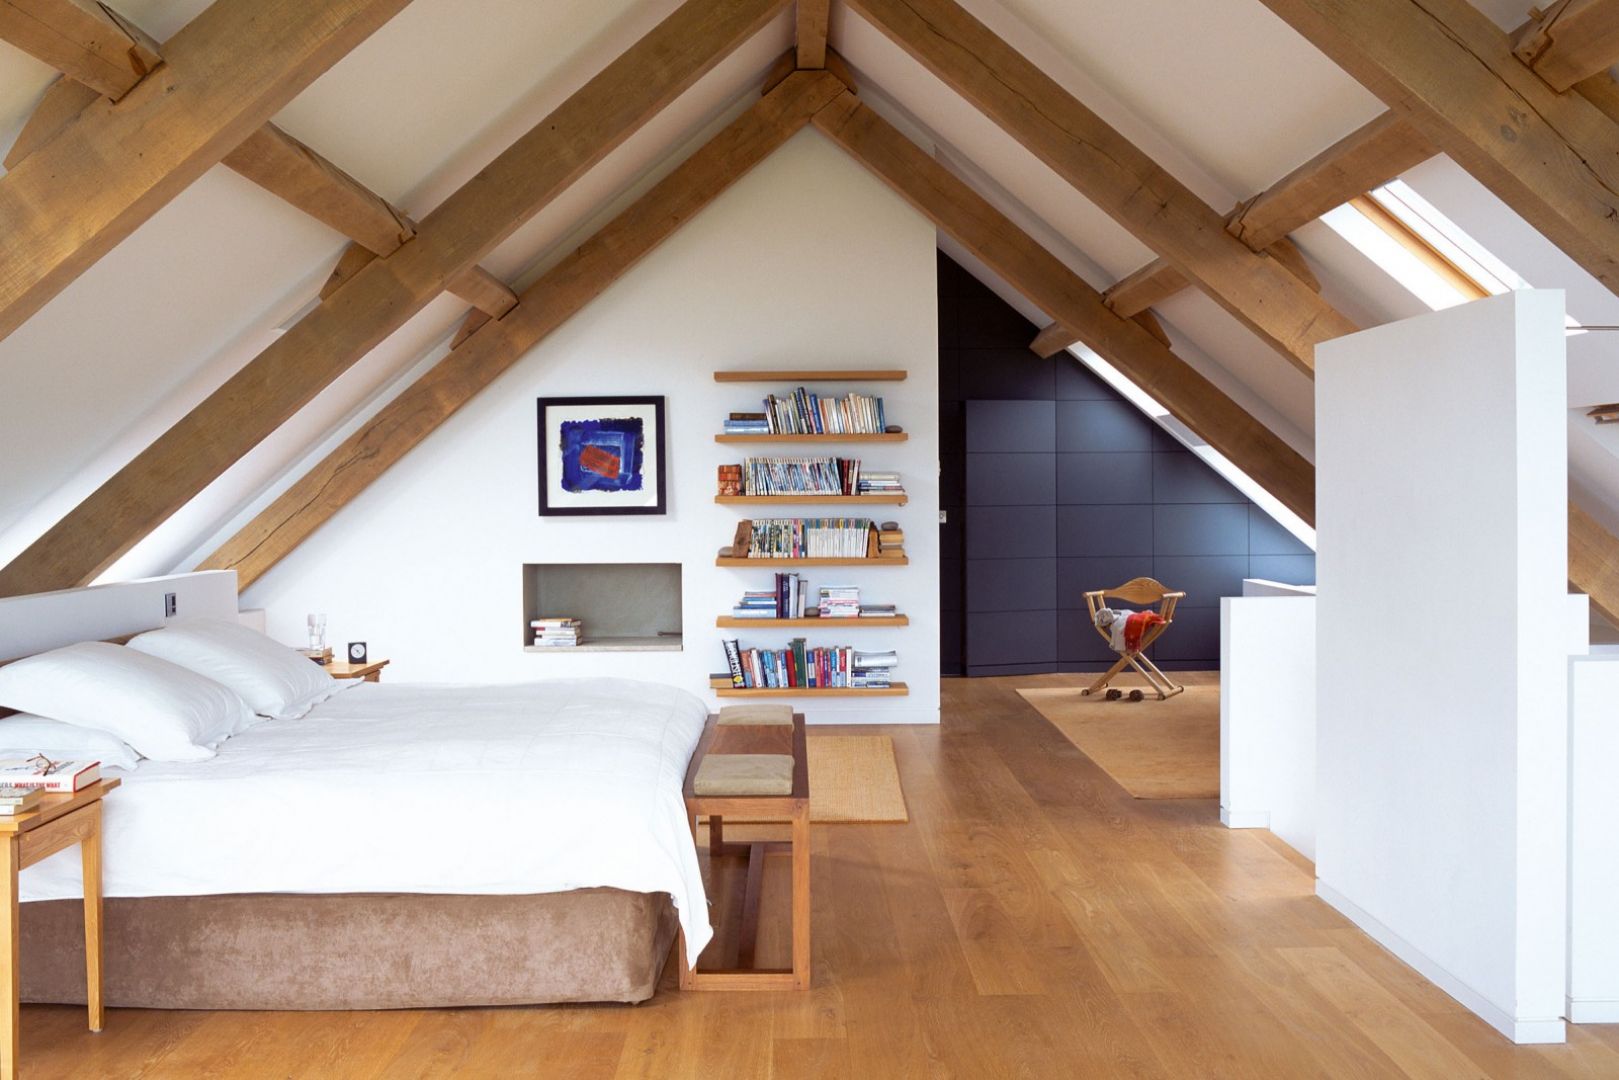 Widoczne drewniane elementy więźby dachowej dodają uroku sypialni. Architekt: McLean Quinlan